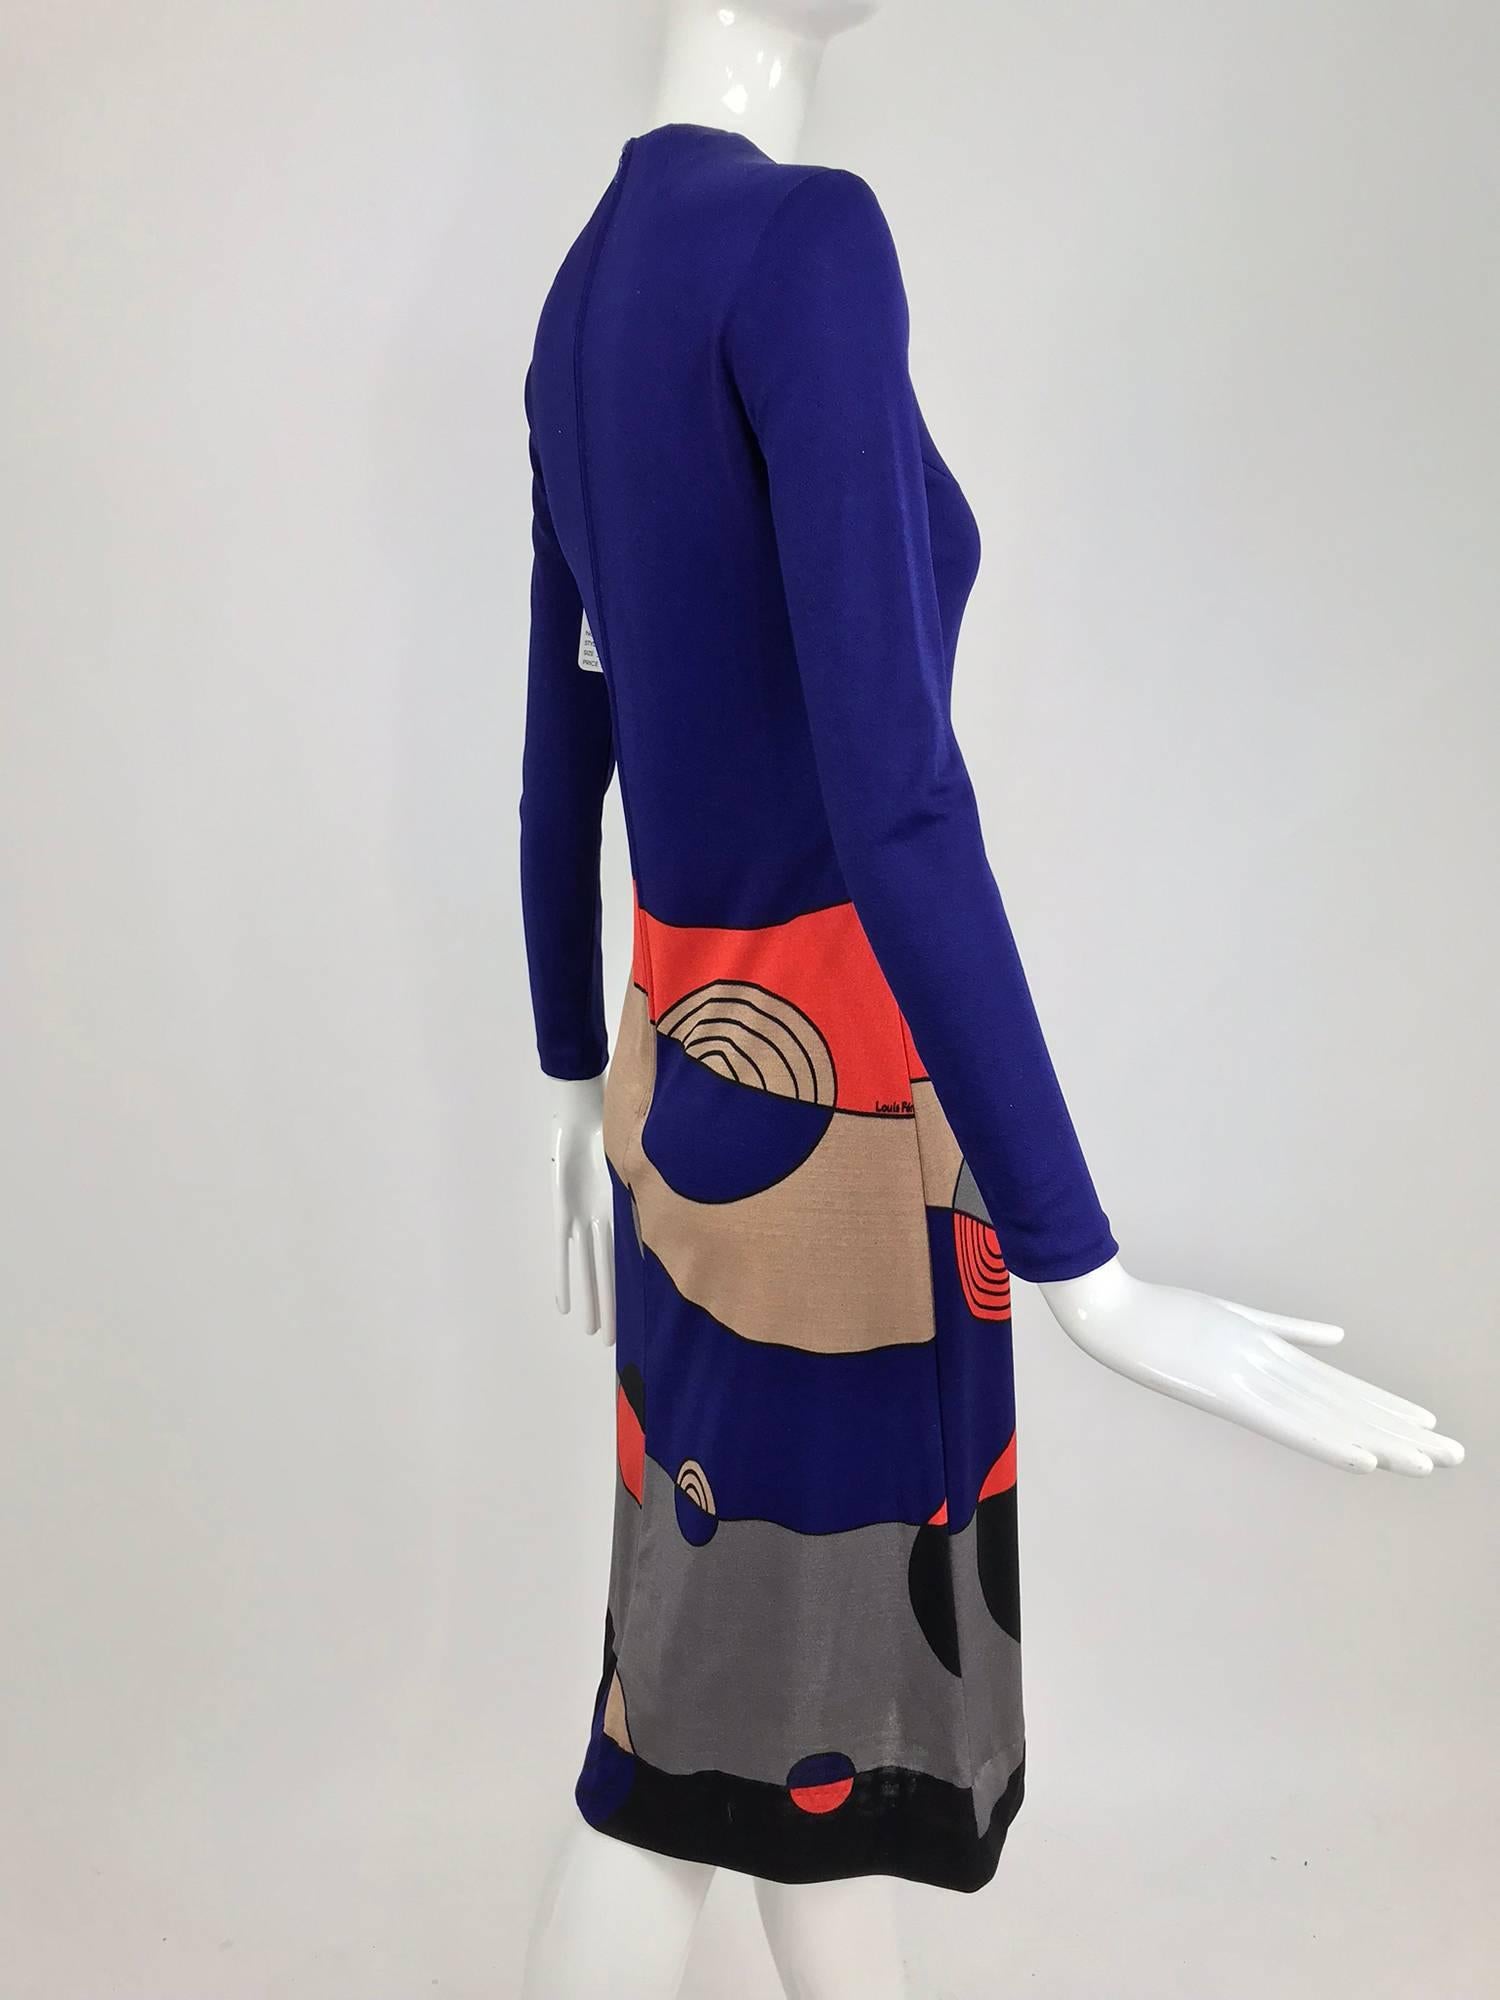 Louis Feraud Op Art Mod print jersey dress 1960s  2